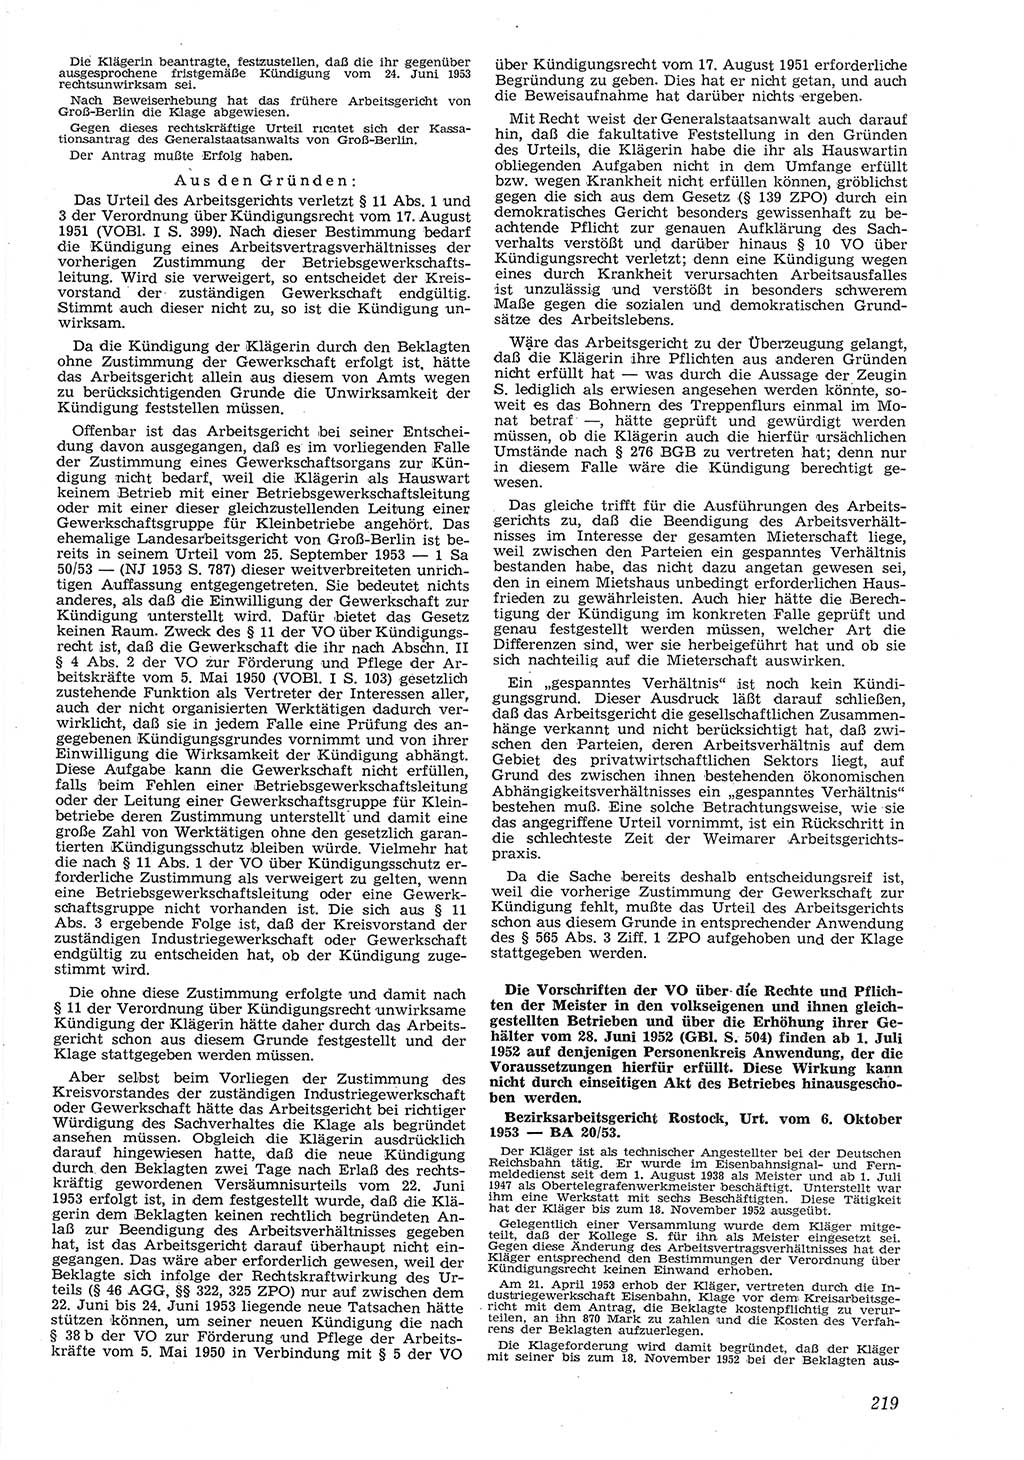 Neue Justiz (NJ), Zeitschrift für Recht und Rechtswissenschaft [Deutsche Demokratische Republik (DDR)], 8. Jahrgang 1954, Seite 219 (NJ DDR 1954, S. 219)